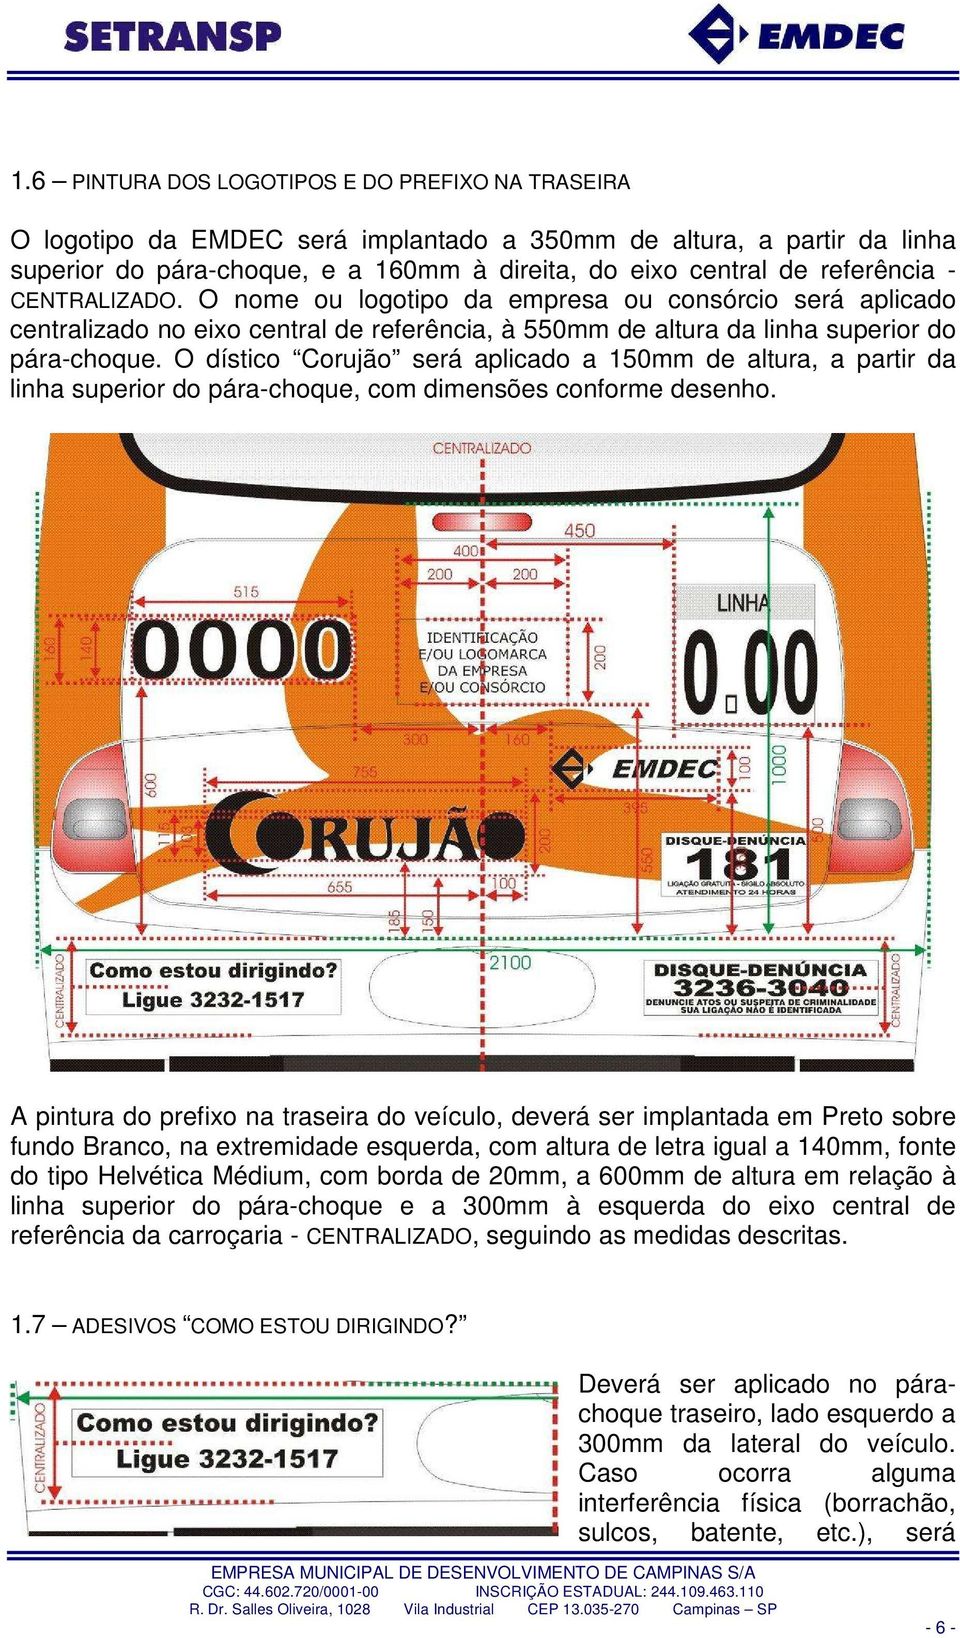 O dístico Corujão será aplicado a 150mm de altura, a partir da linha superior do pára-choque, com dimensões conforme desenho.